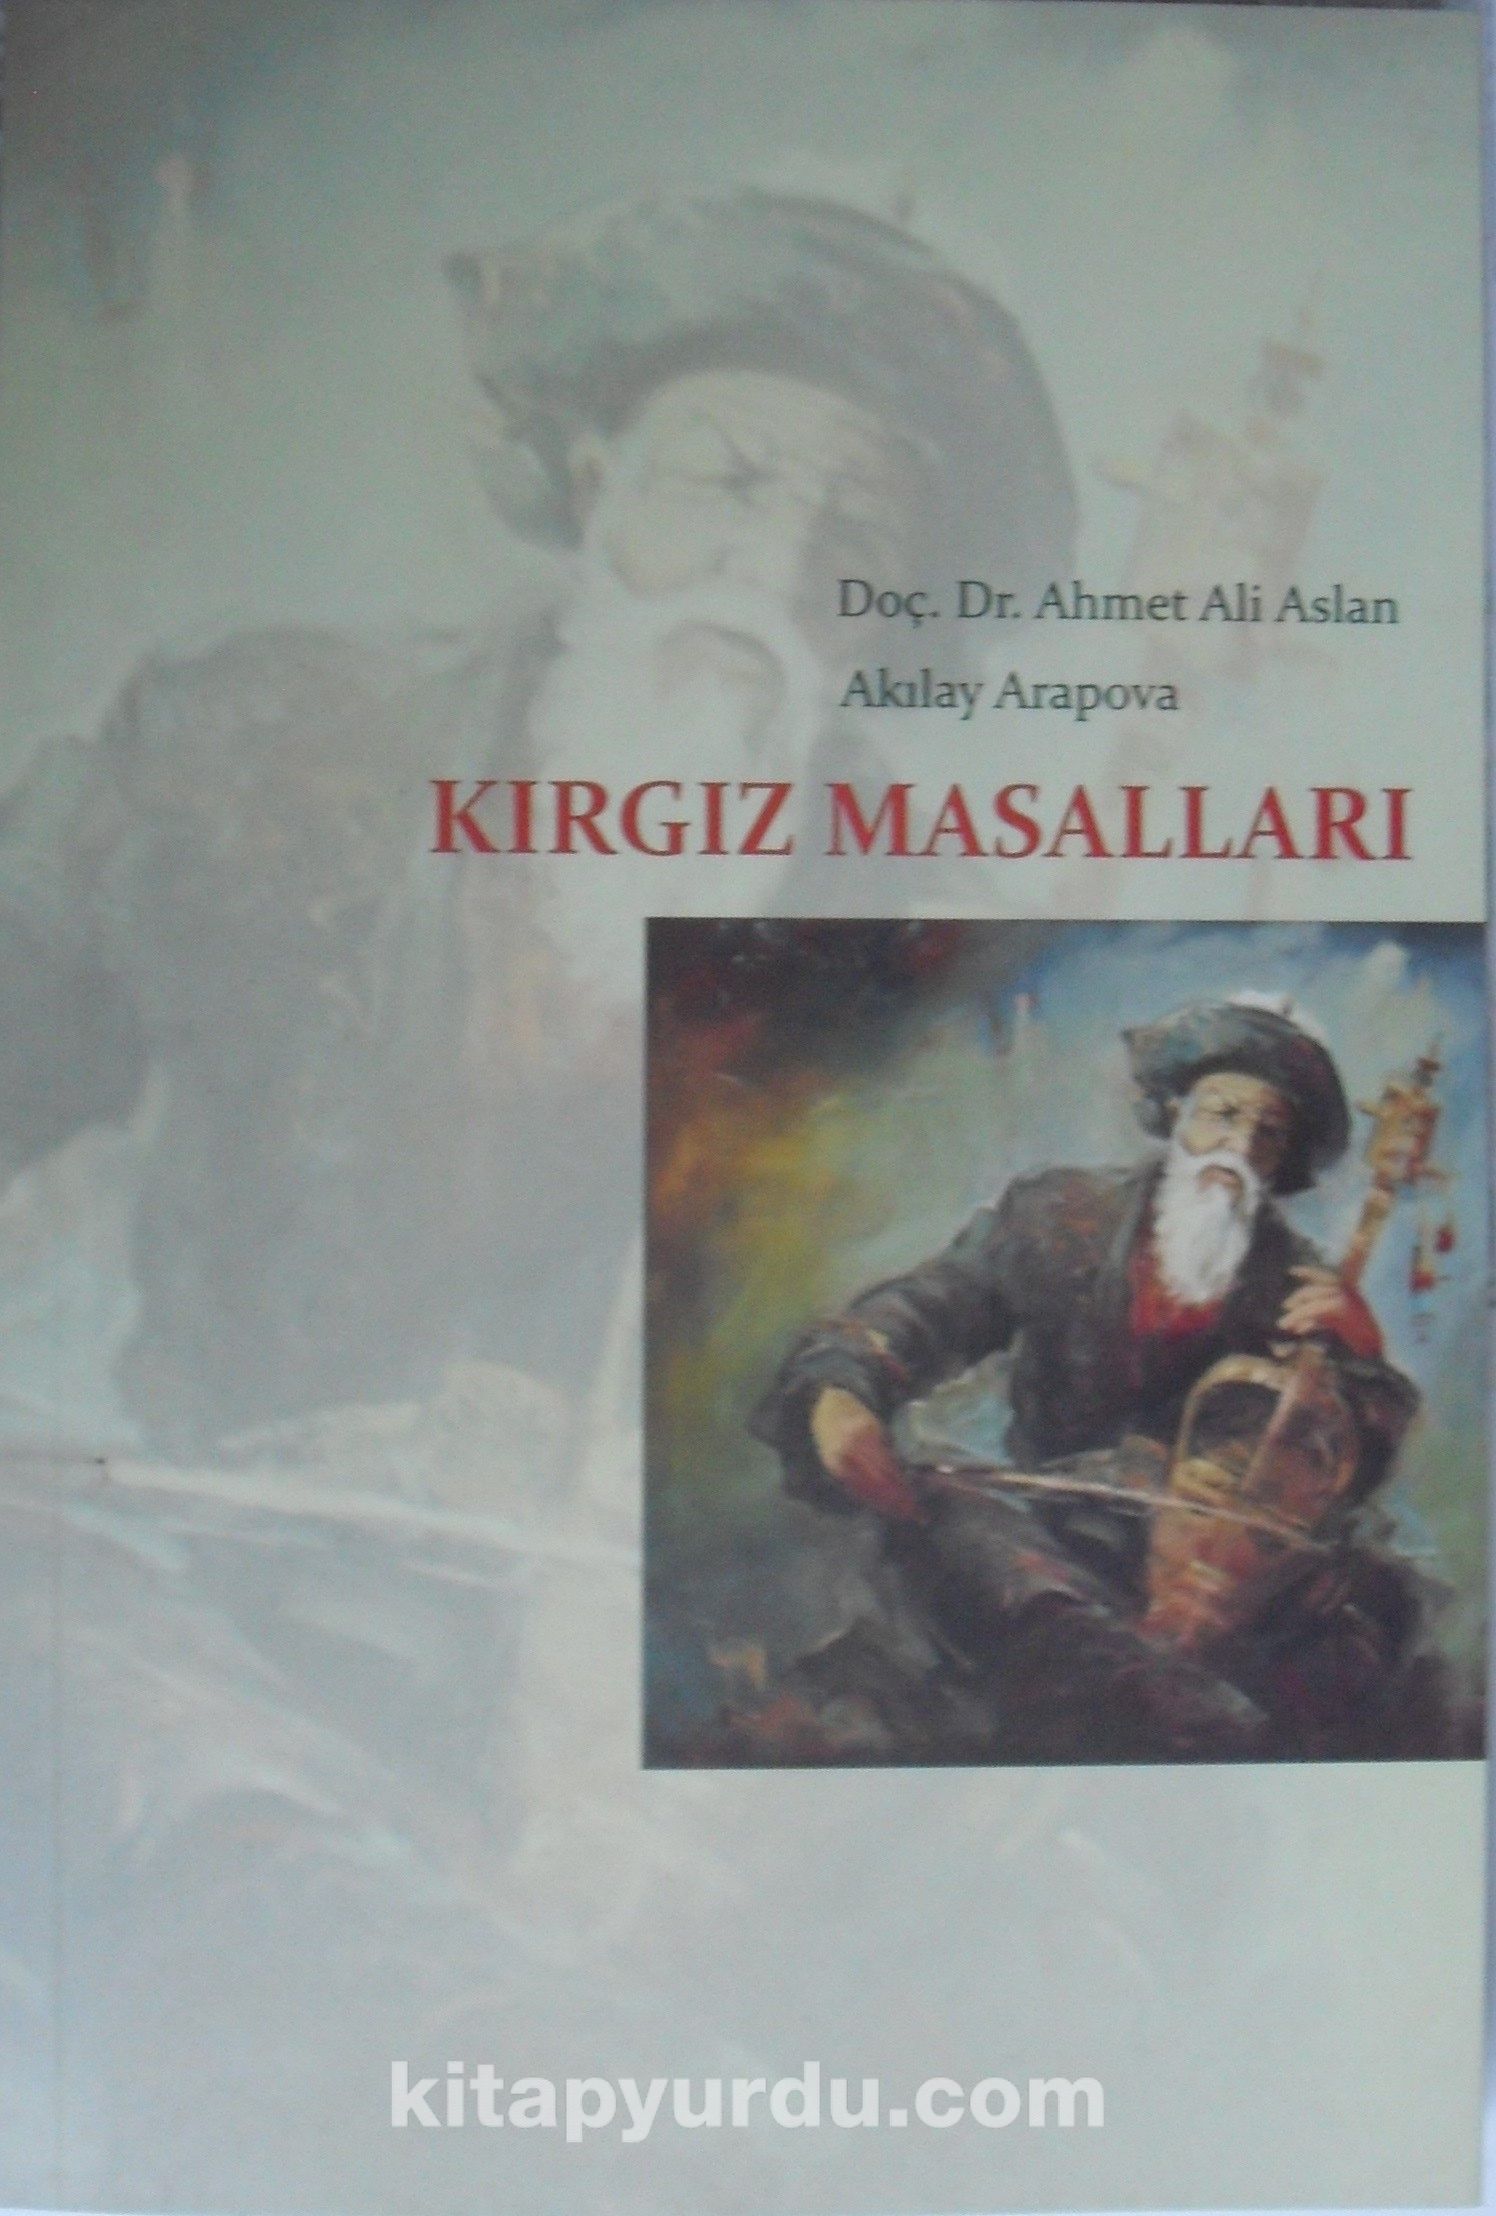 Kırgız Folklor ve Etnografyası & Kırgız Masalları